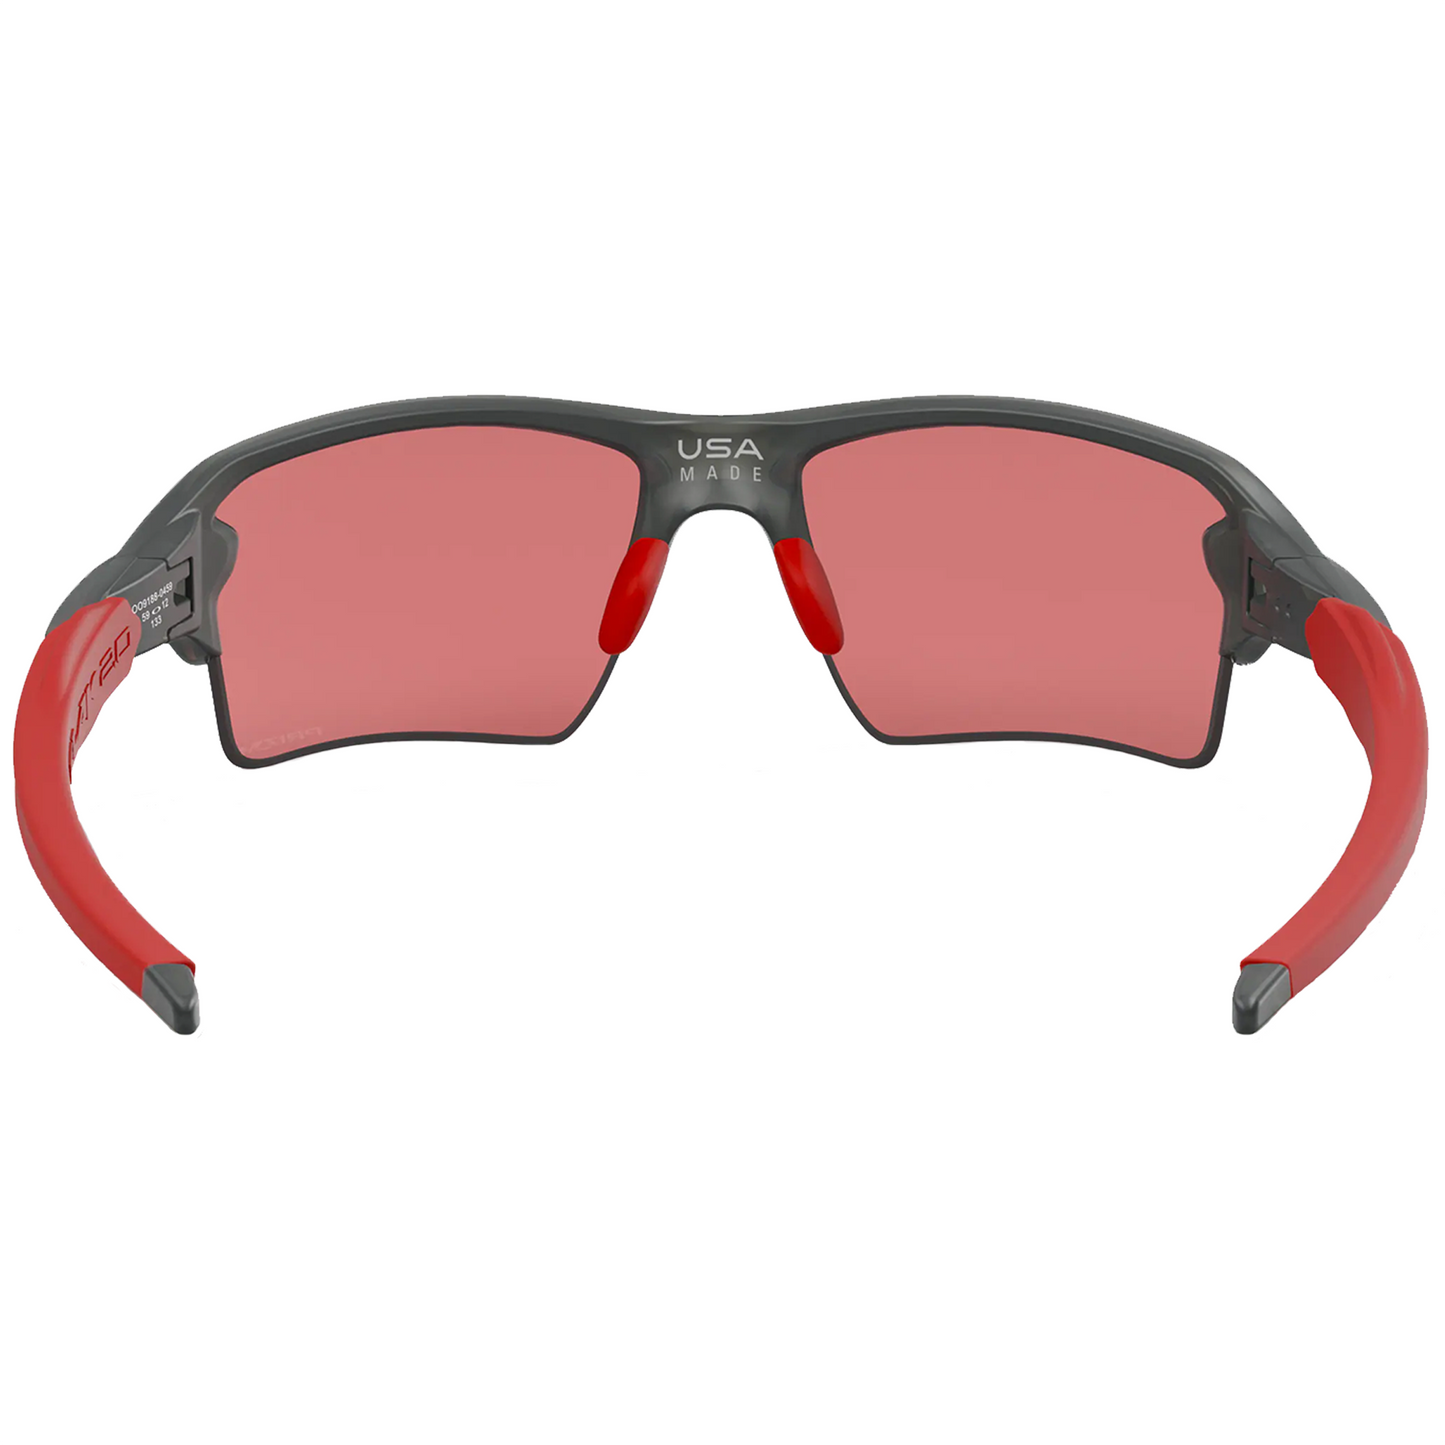 Oakley Flak 2.0 XL Sunglasses (Matte Grey Smoke) Prizm Road Lens - Free Case